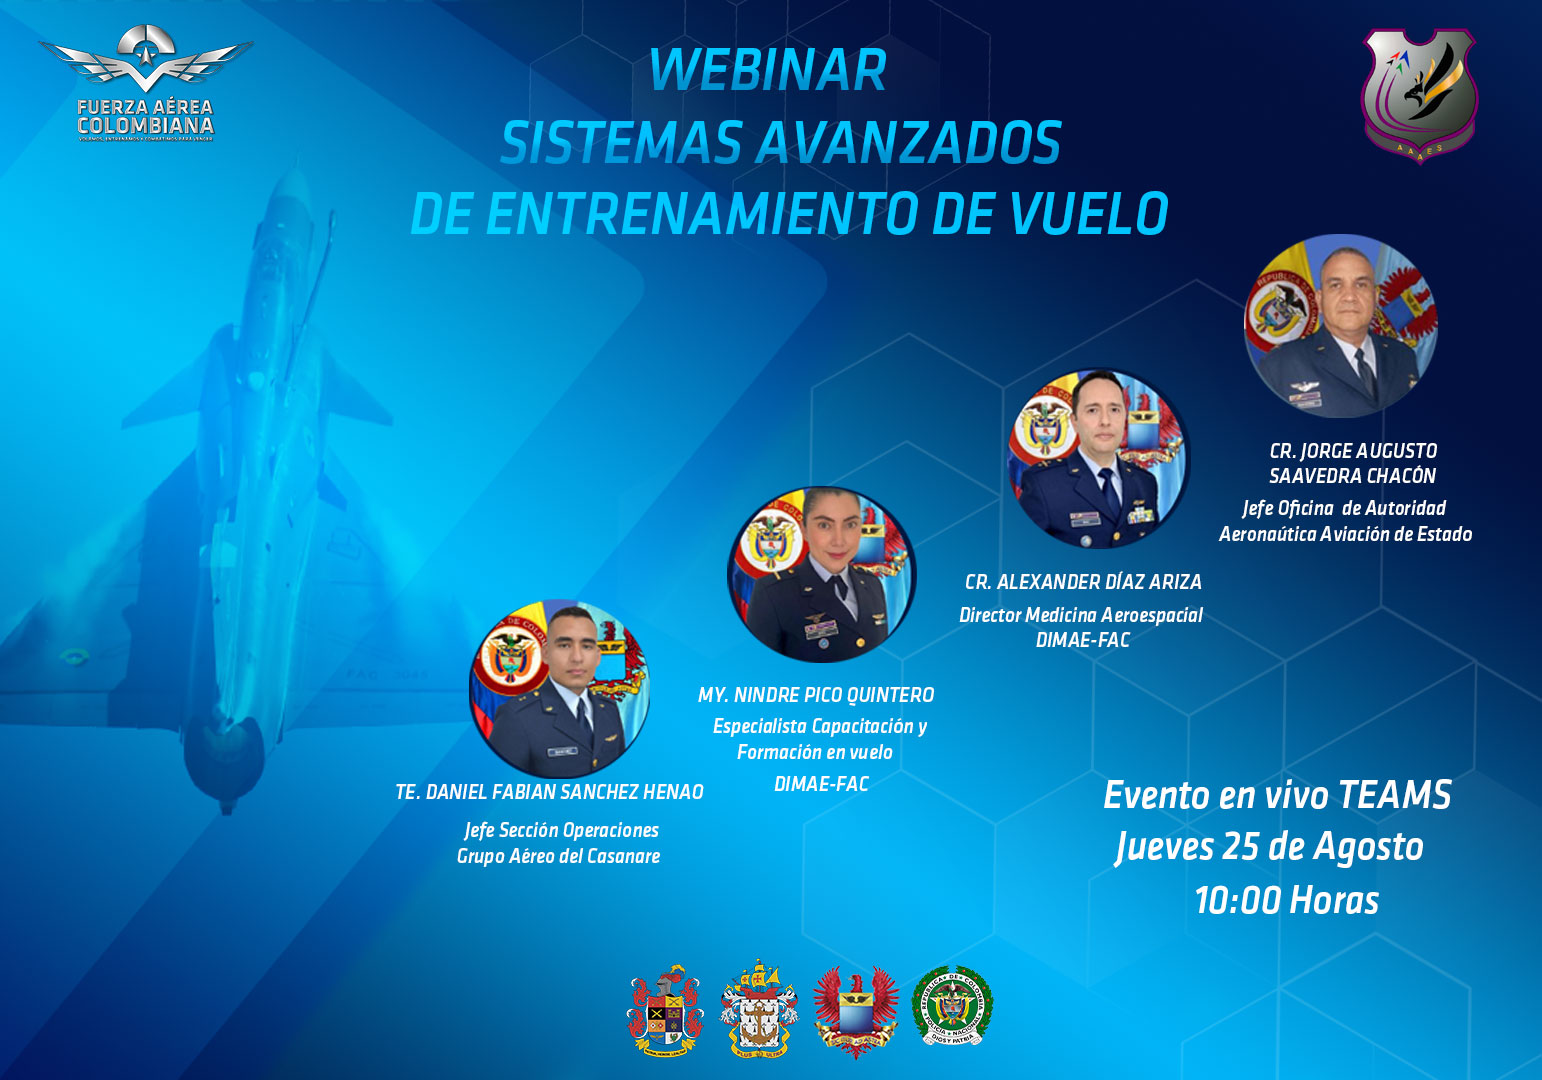 Invitación a webinar "Sistemas Avanzados de Entrenamiento de Vuelo" organizado por la Fuerza Aérea Colombiana